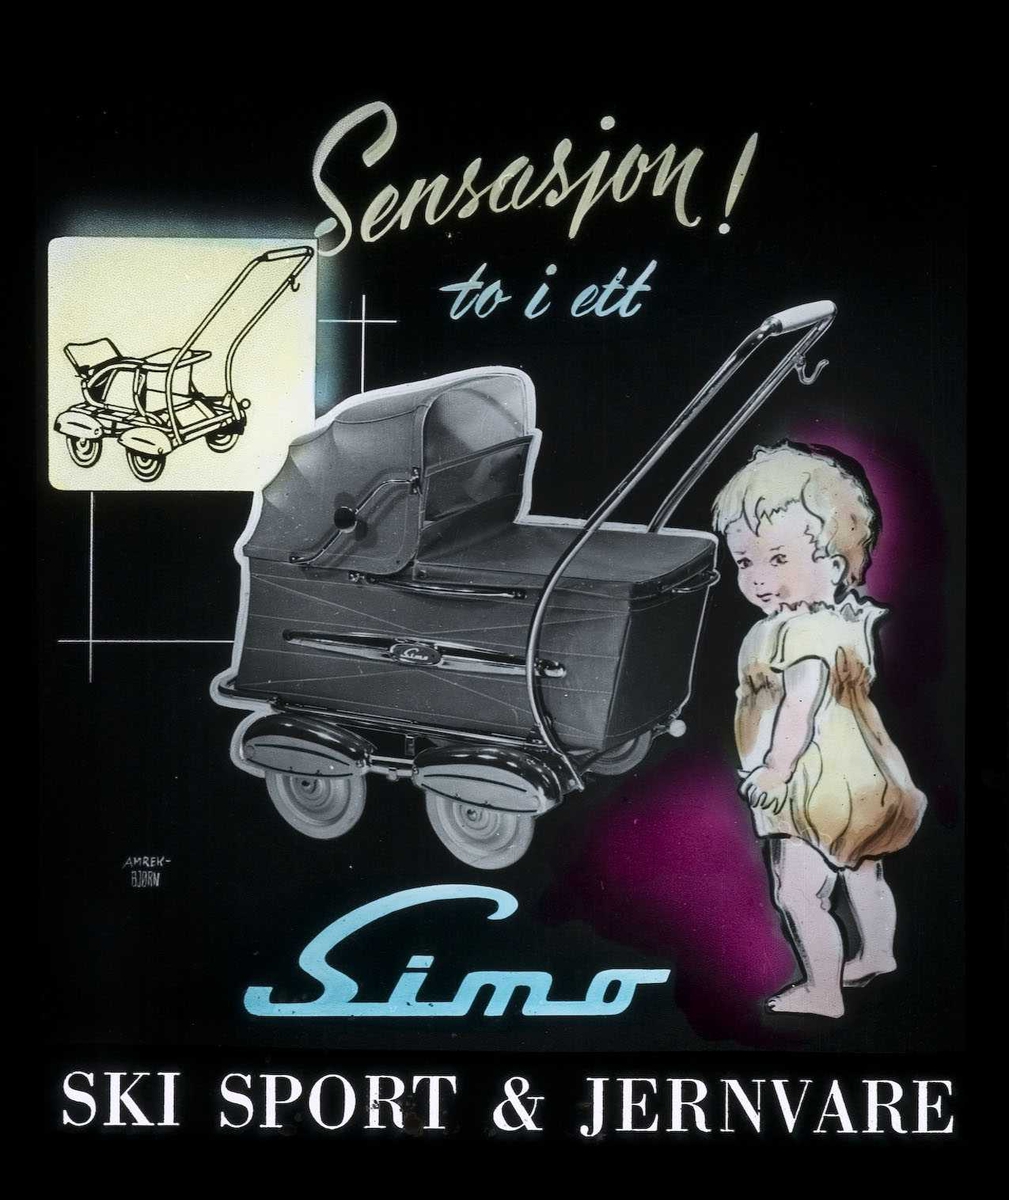 Kinoreklame fra Ski for Simo barnevogn. Sensasjon - to i ett. Ski sport & jernvare.